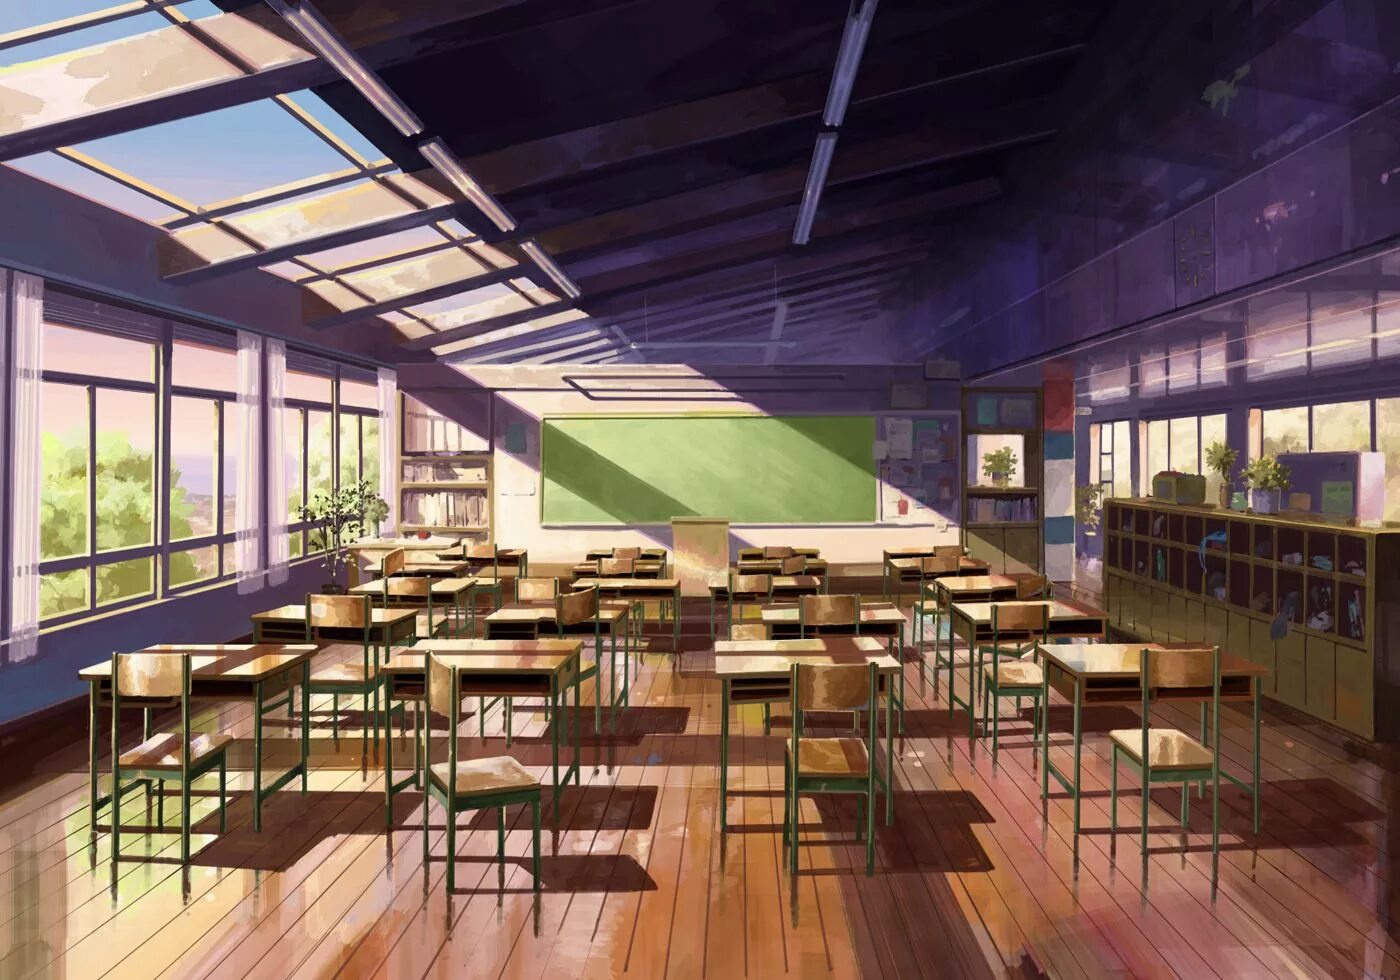 R34 classroom. Школа гача лайф Япония.